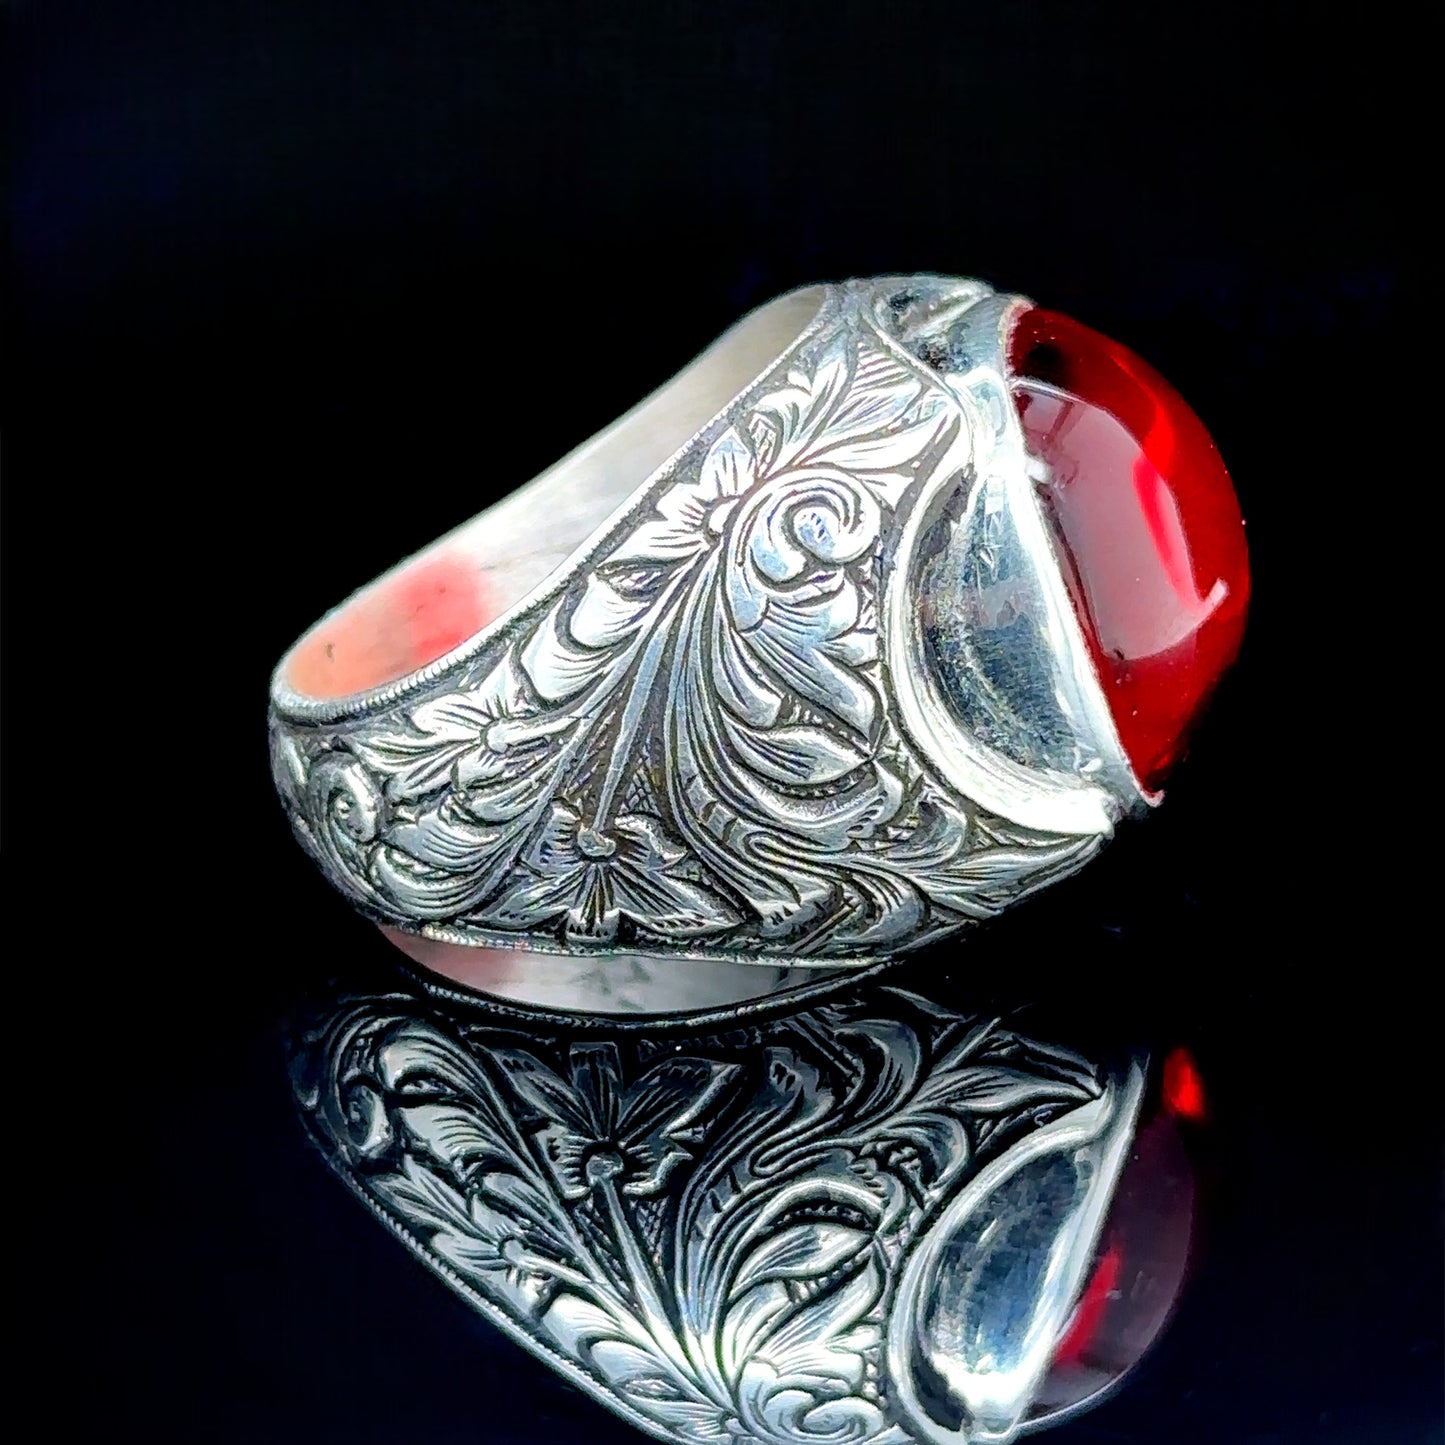 Men Handmade Ruby Stone Engraved Men Ring